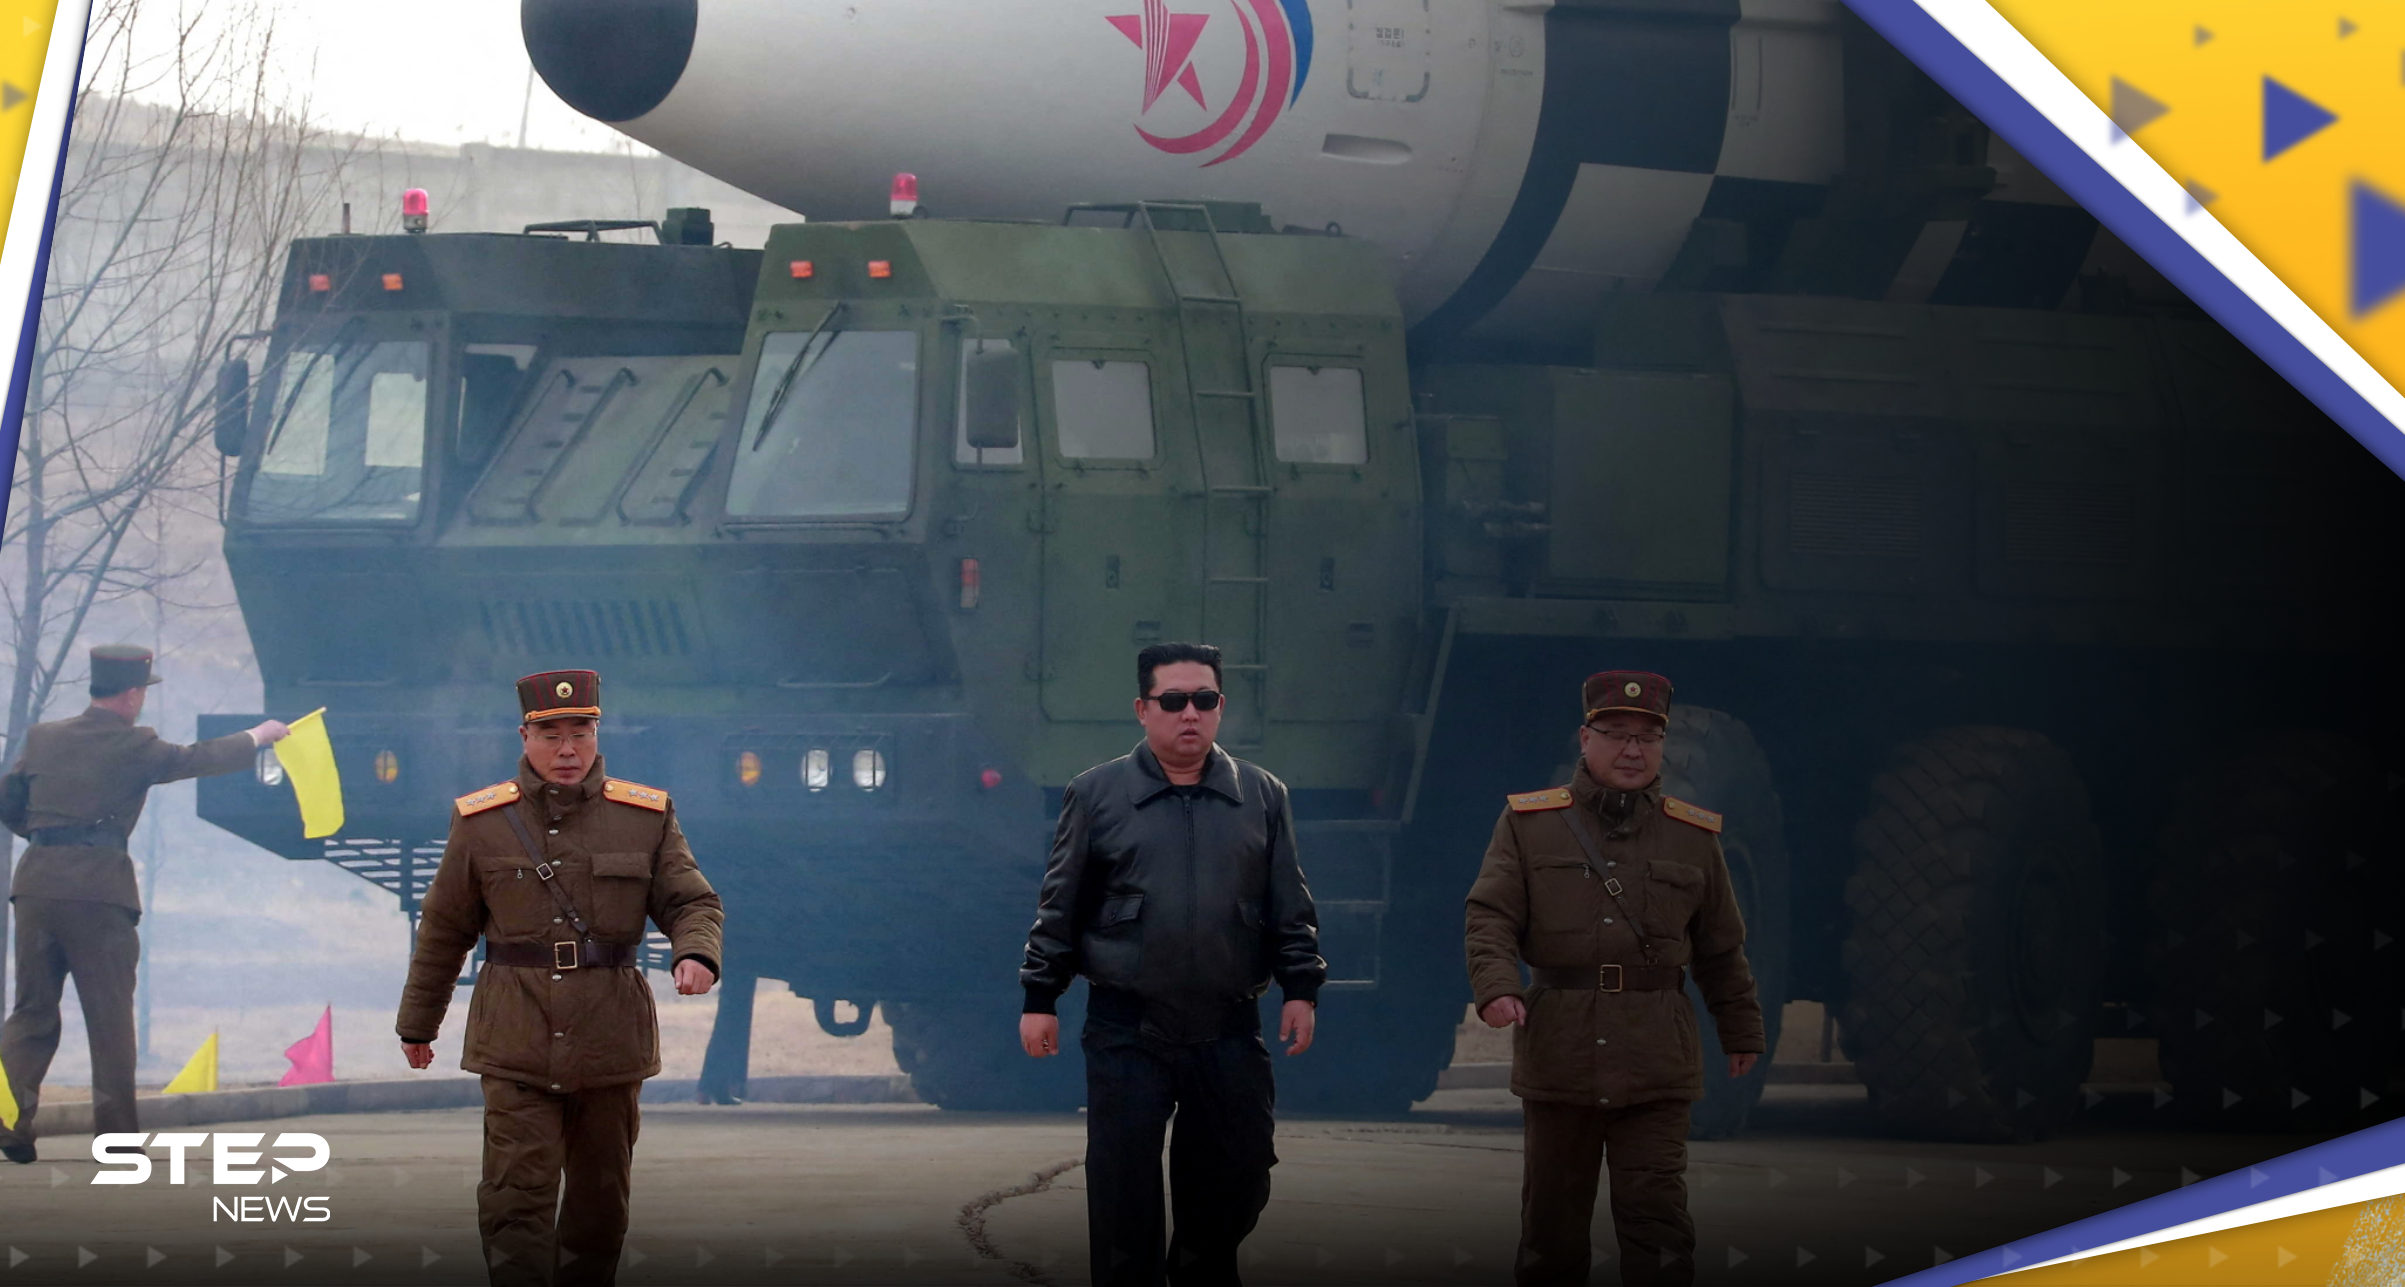 صور الأقمار الصناعية تكشف عن تحرك نووي "كبير" في كوريا الشمالية بعد أوامر زعيم البلاد 